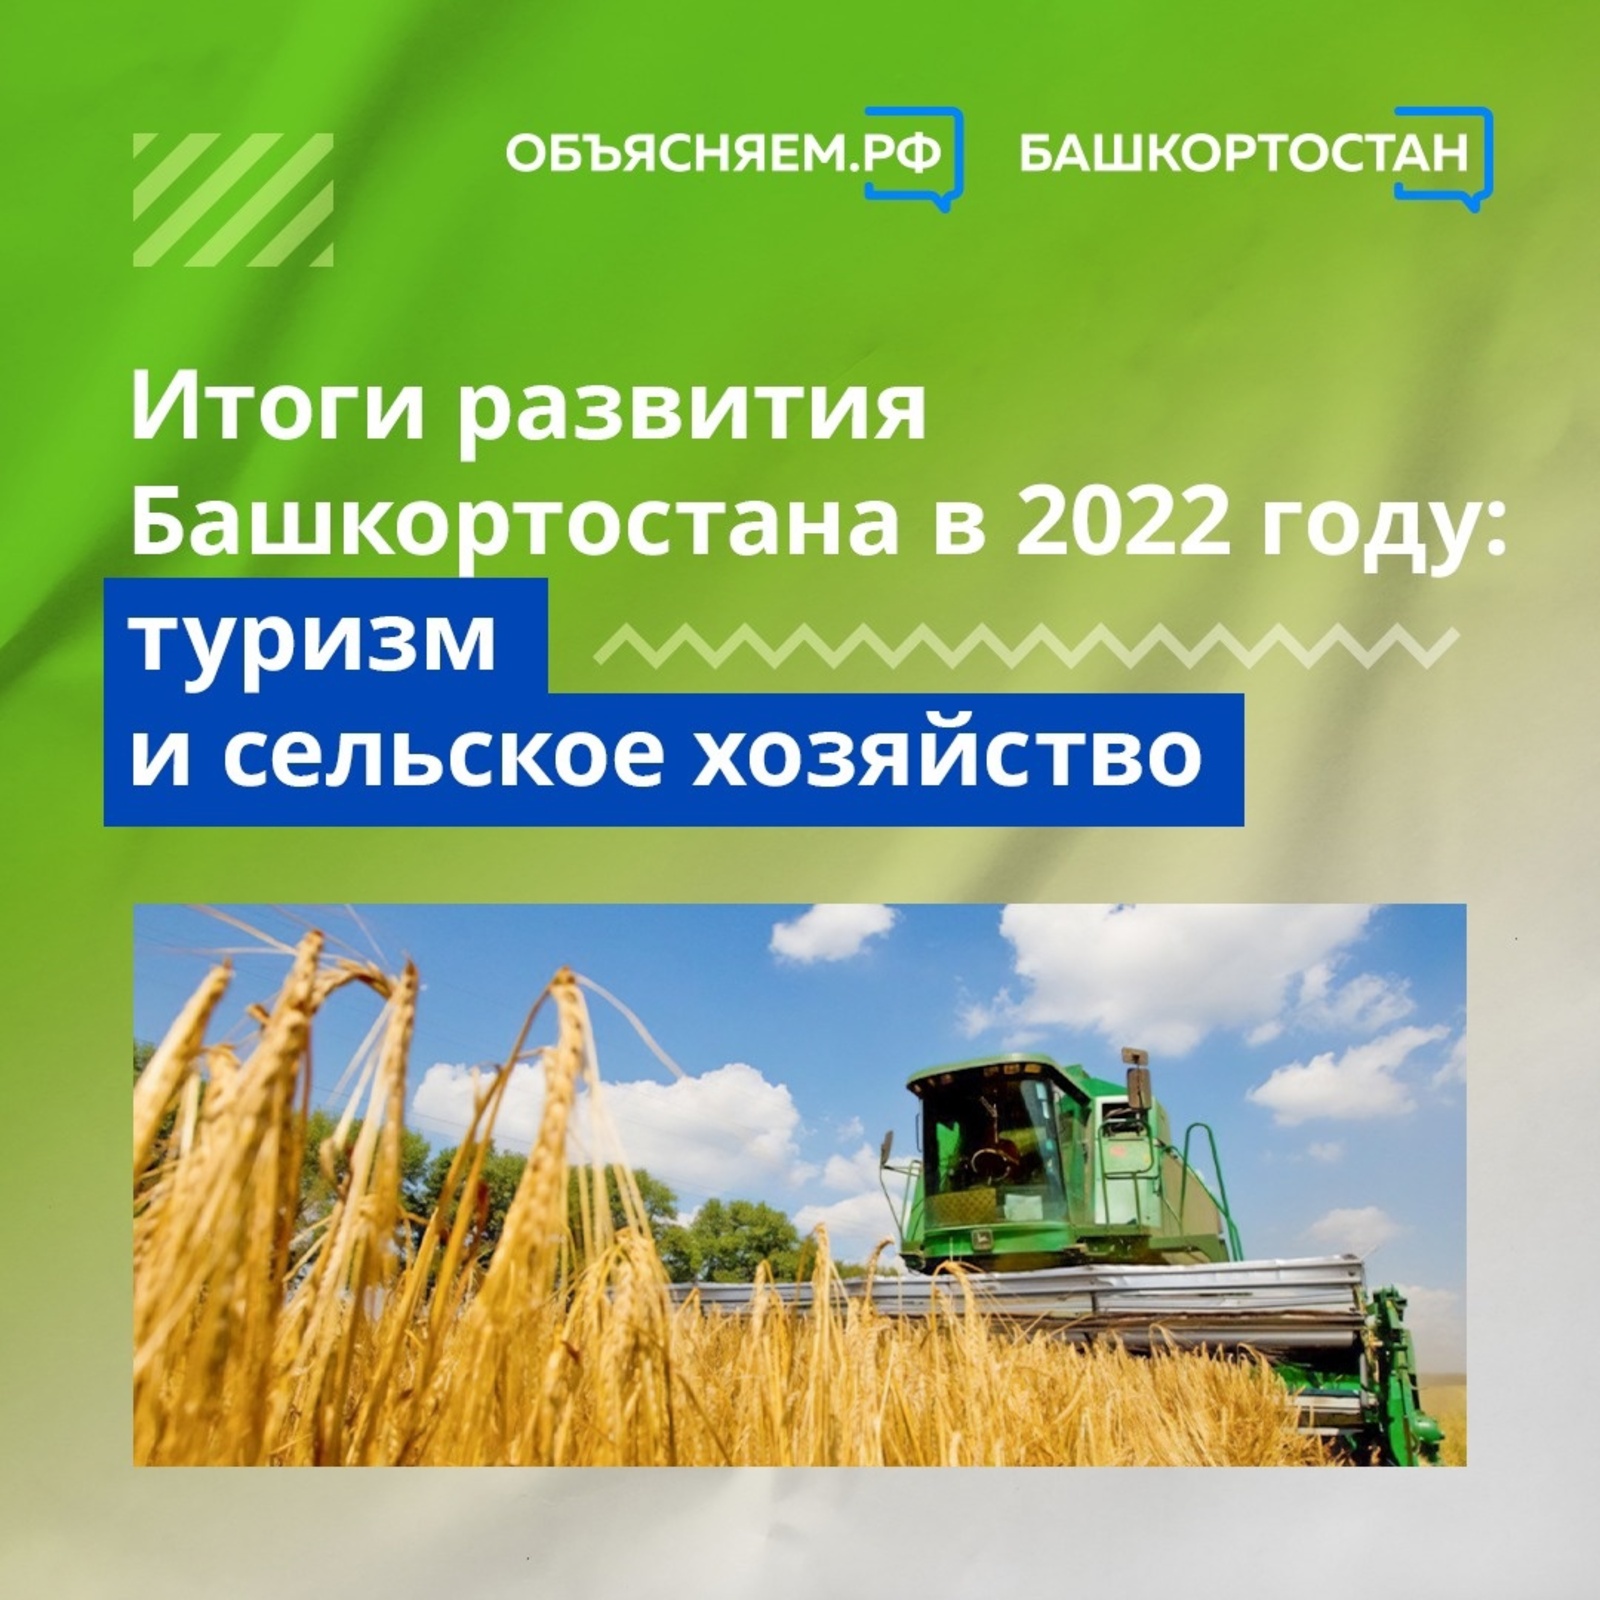 Итоги развития Башкортостана в 2022 году: туризм и сельское хозяйство